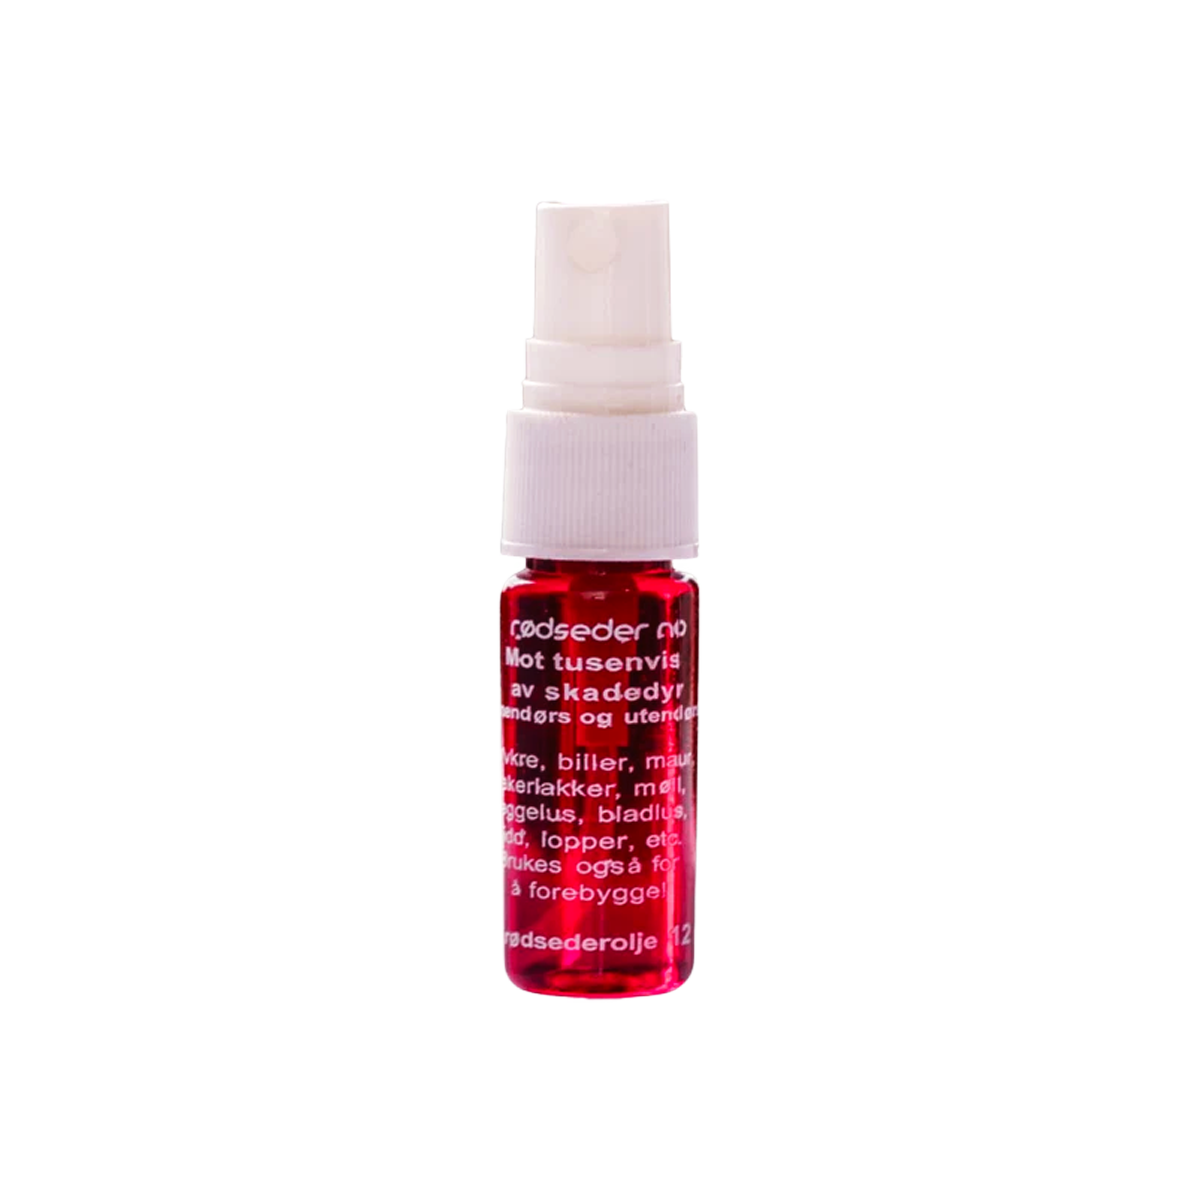 Swedish Red Cedar Oil™ Rödcederolja 12 ml Spray